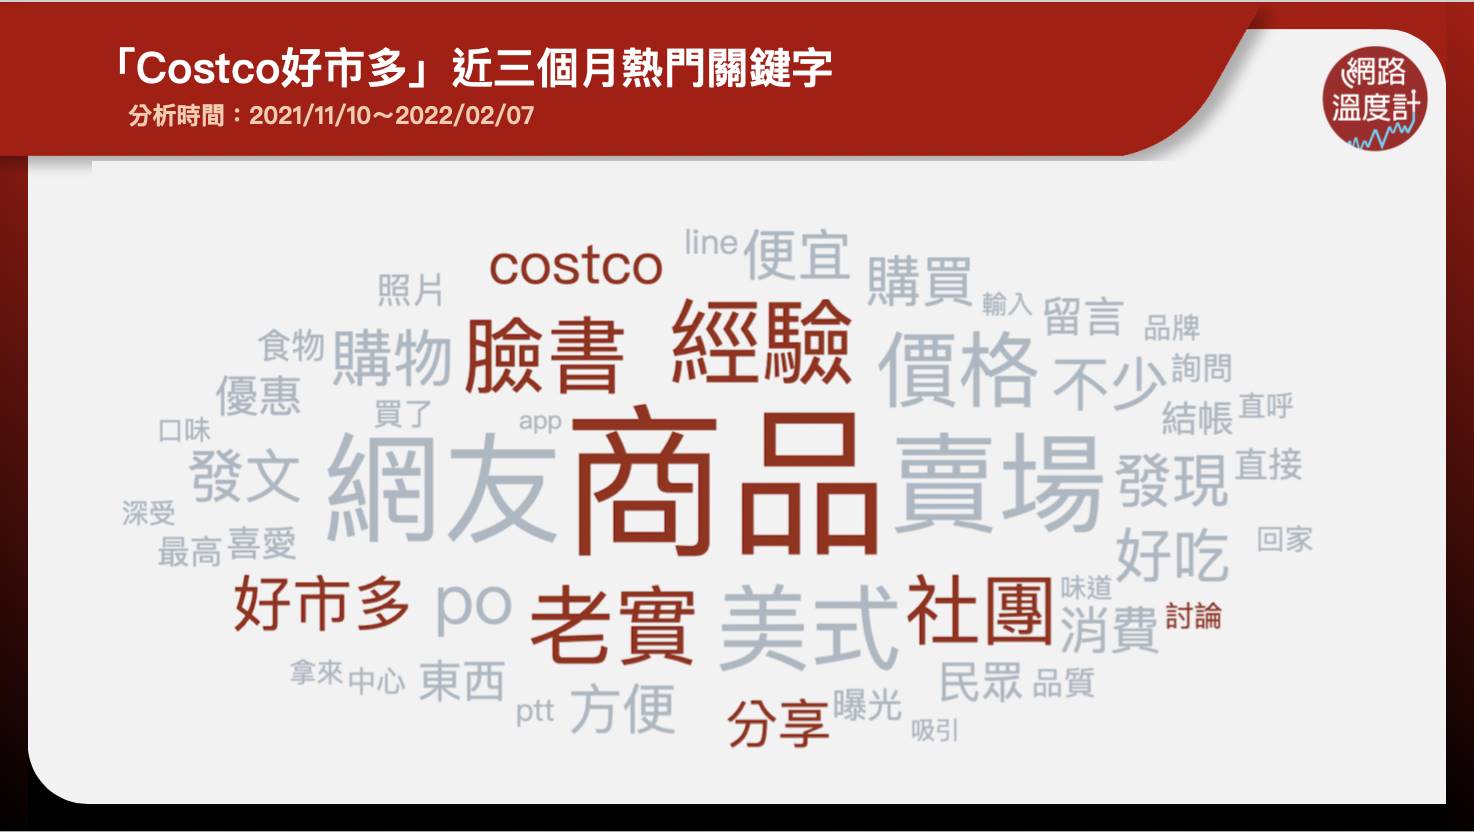 Costco好市多近三個月熱門關鍵字